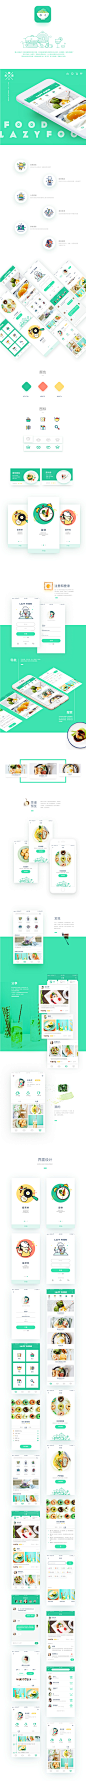 懒人食谱APP概念设计-UI中国-专业用户体验设计平台